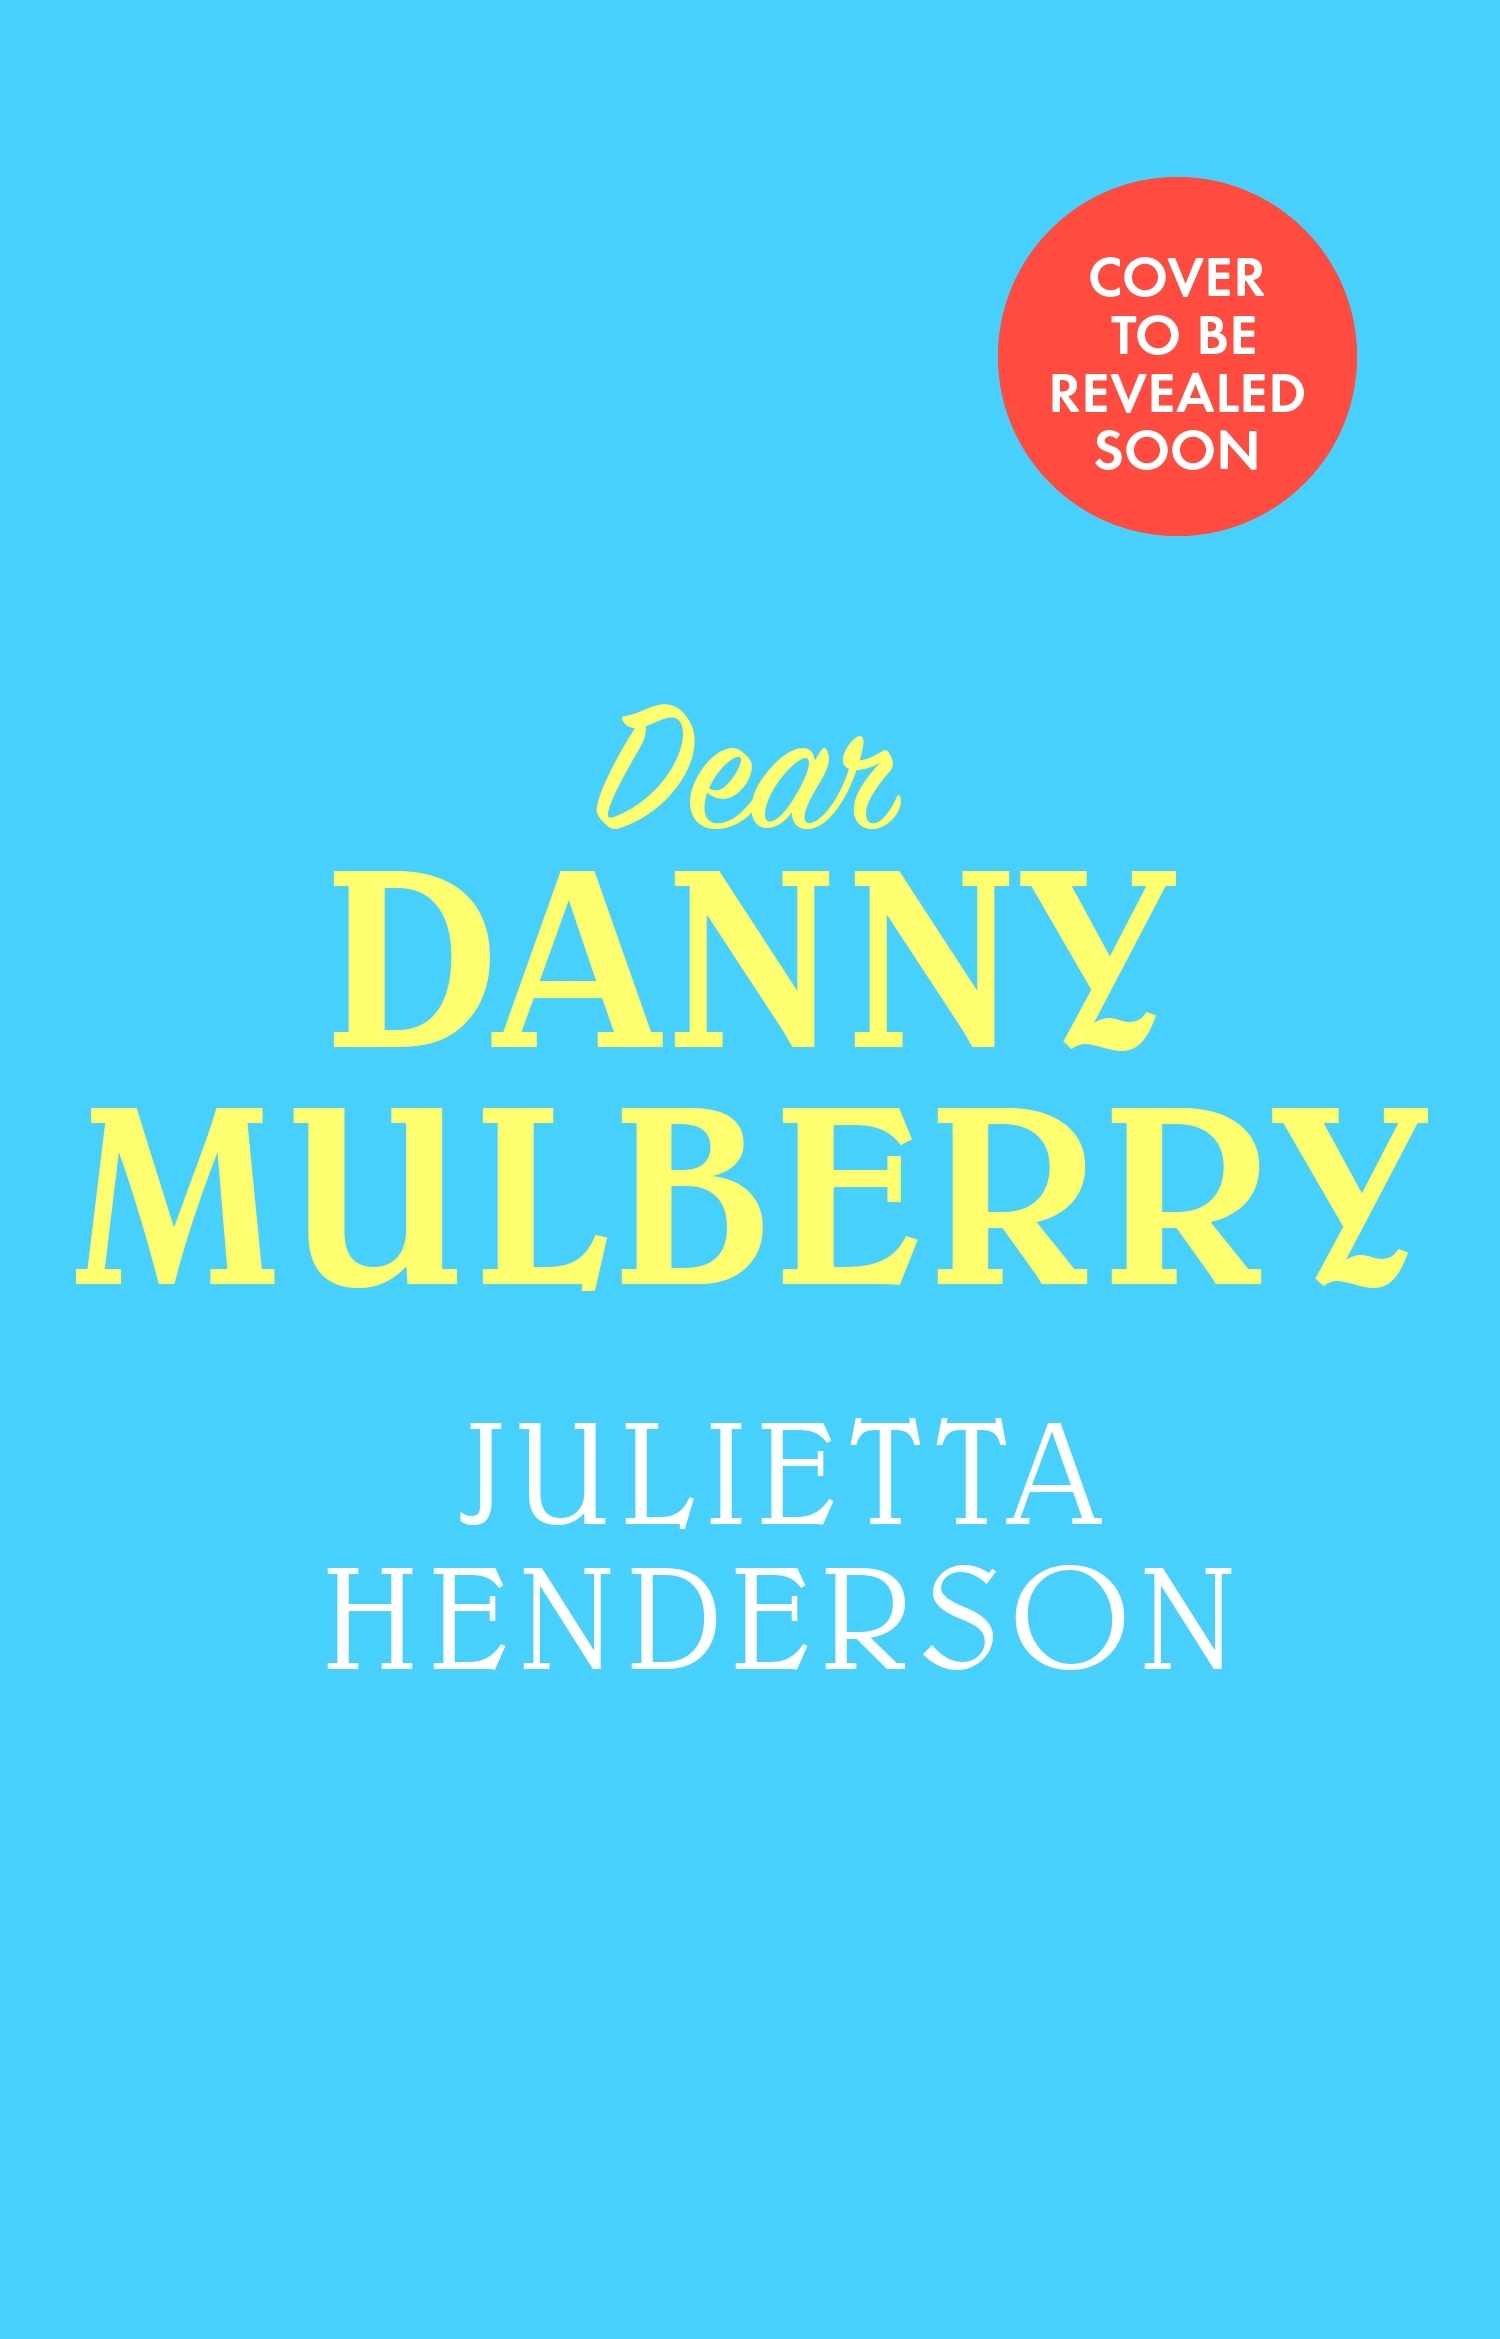 Book “Dear Danny Mulberry” by Julietta Henderson — August 18, 2022